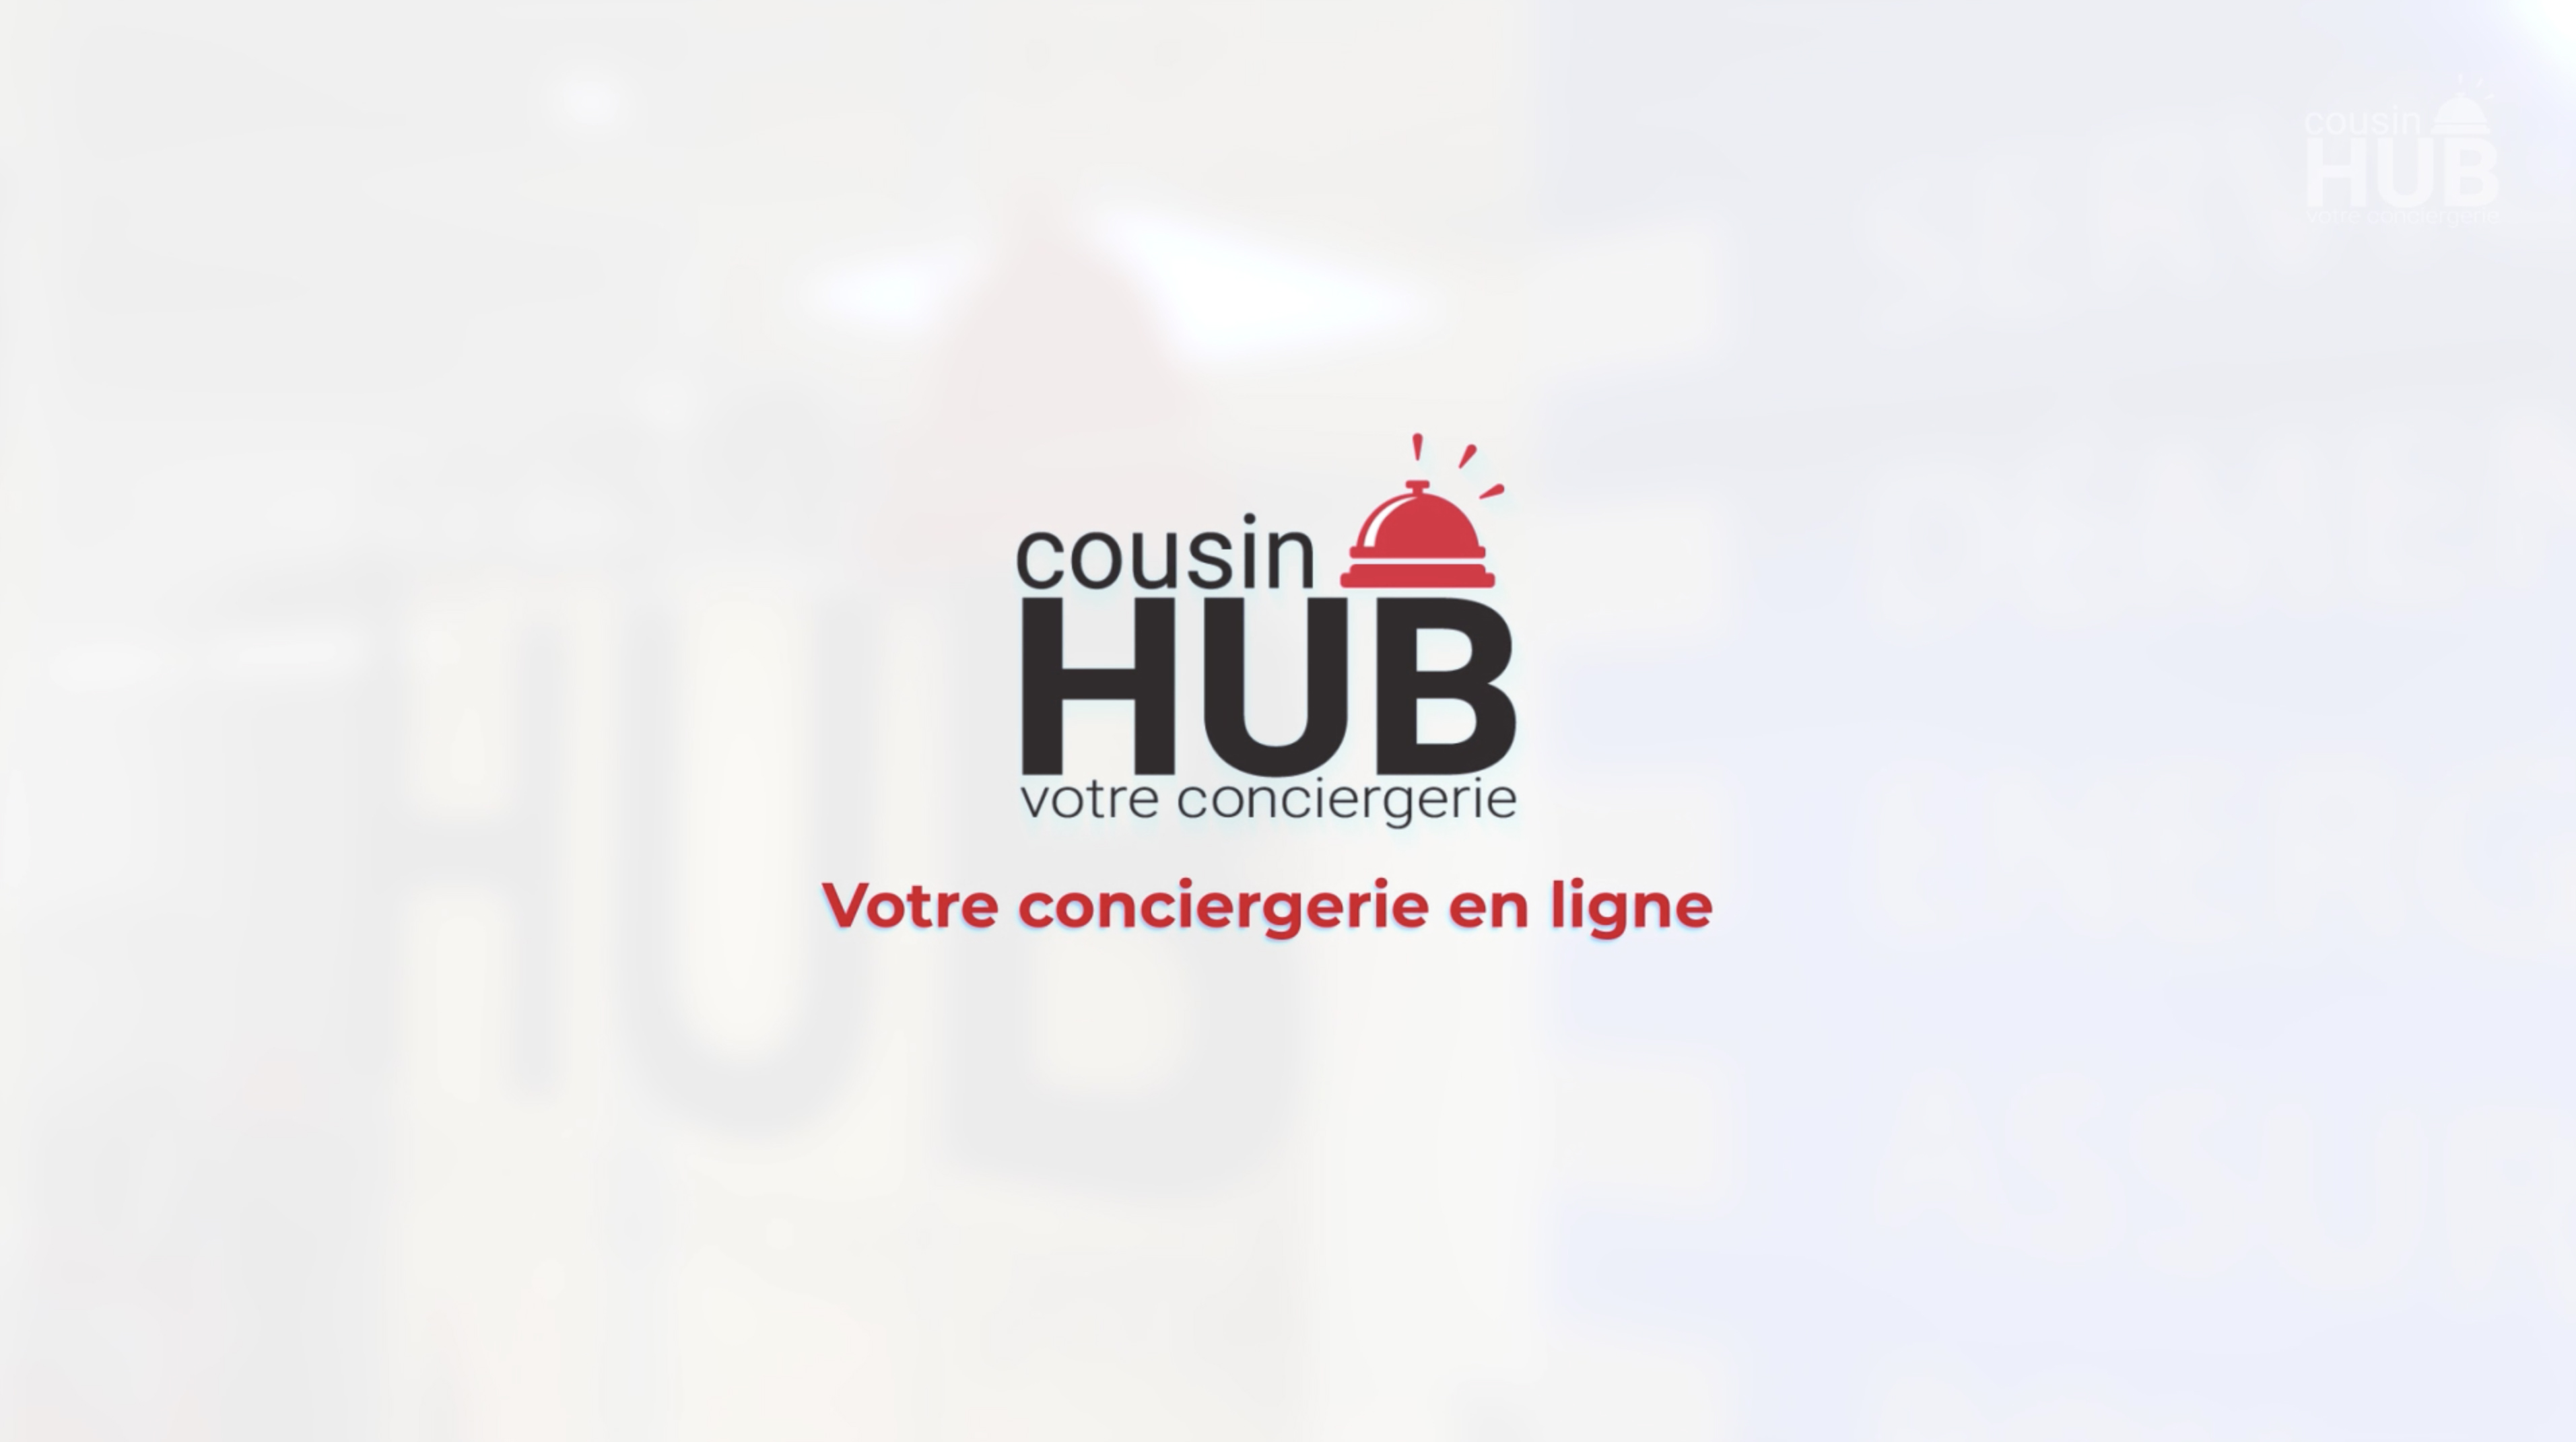 Présentation de Cousin HUB aux franchisés Century 21